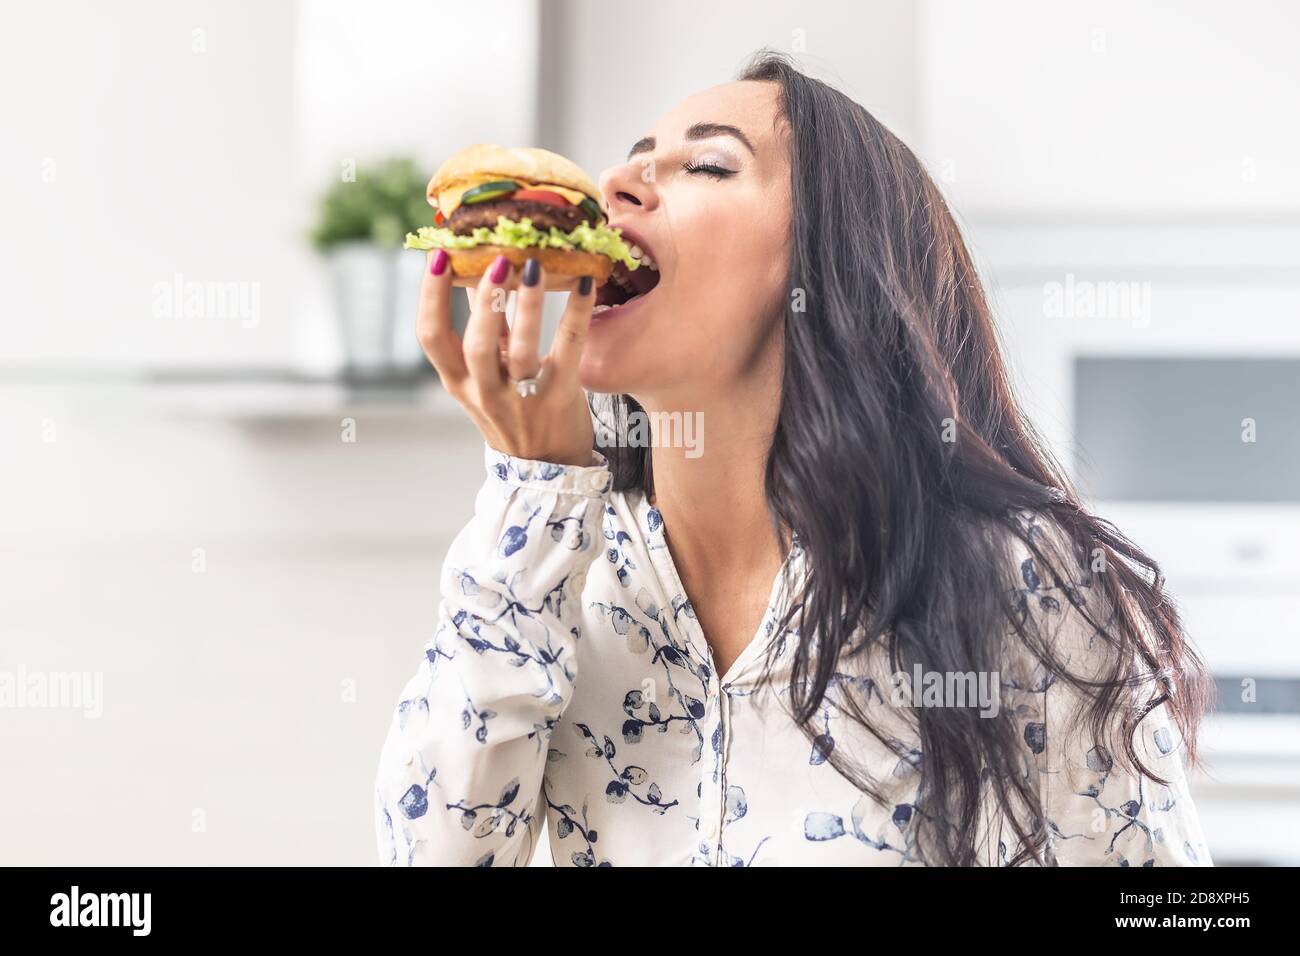 Genießen Sie einen Biss eines Hamburgers von einer Frau. Stockfoto